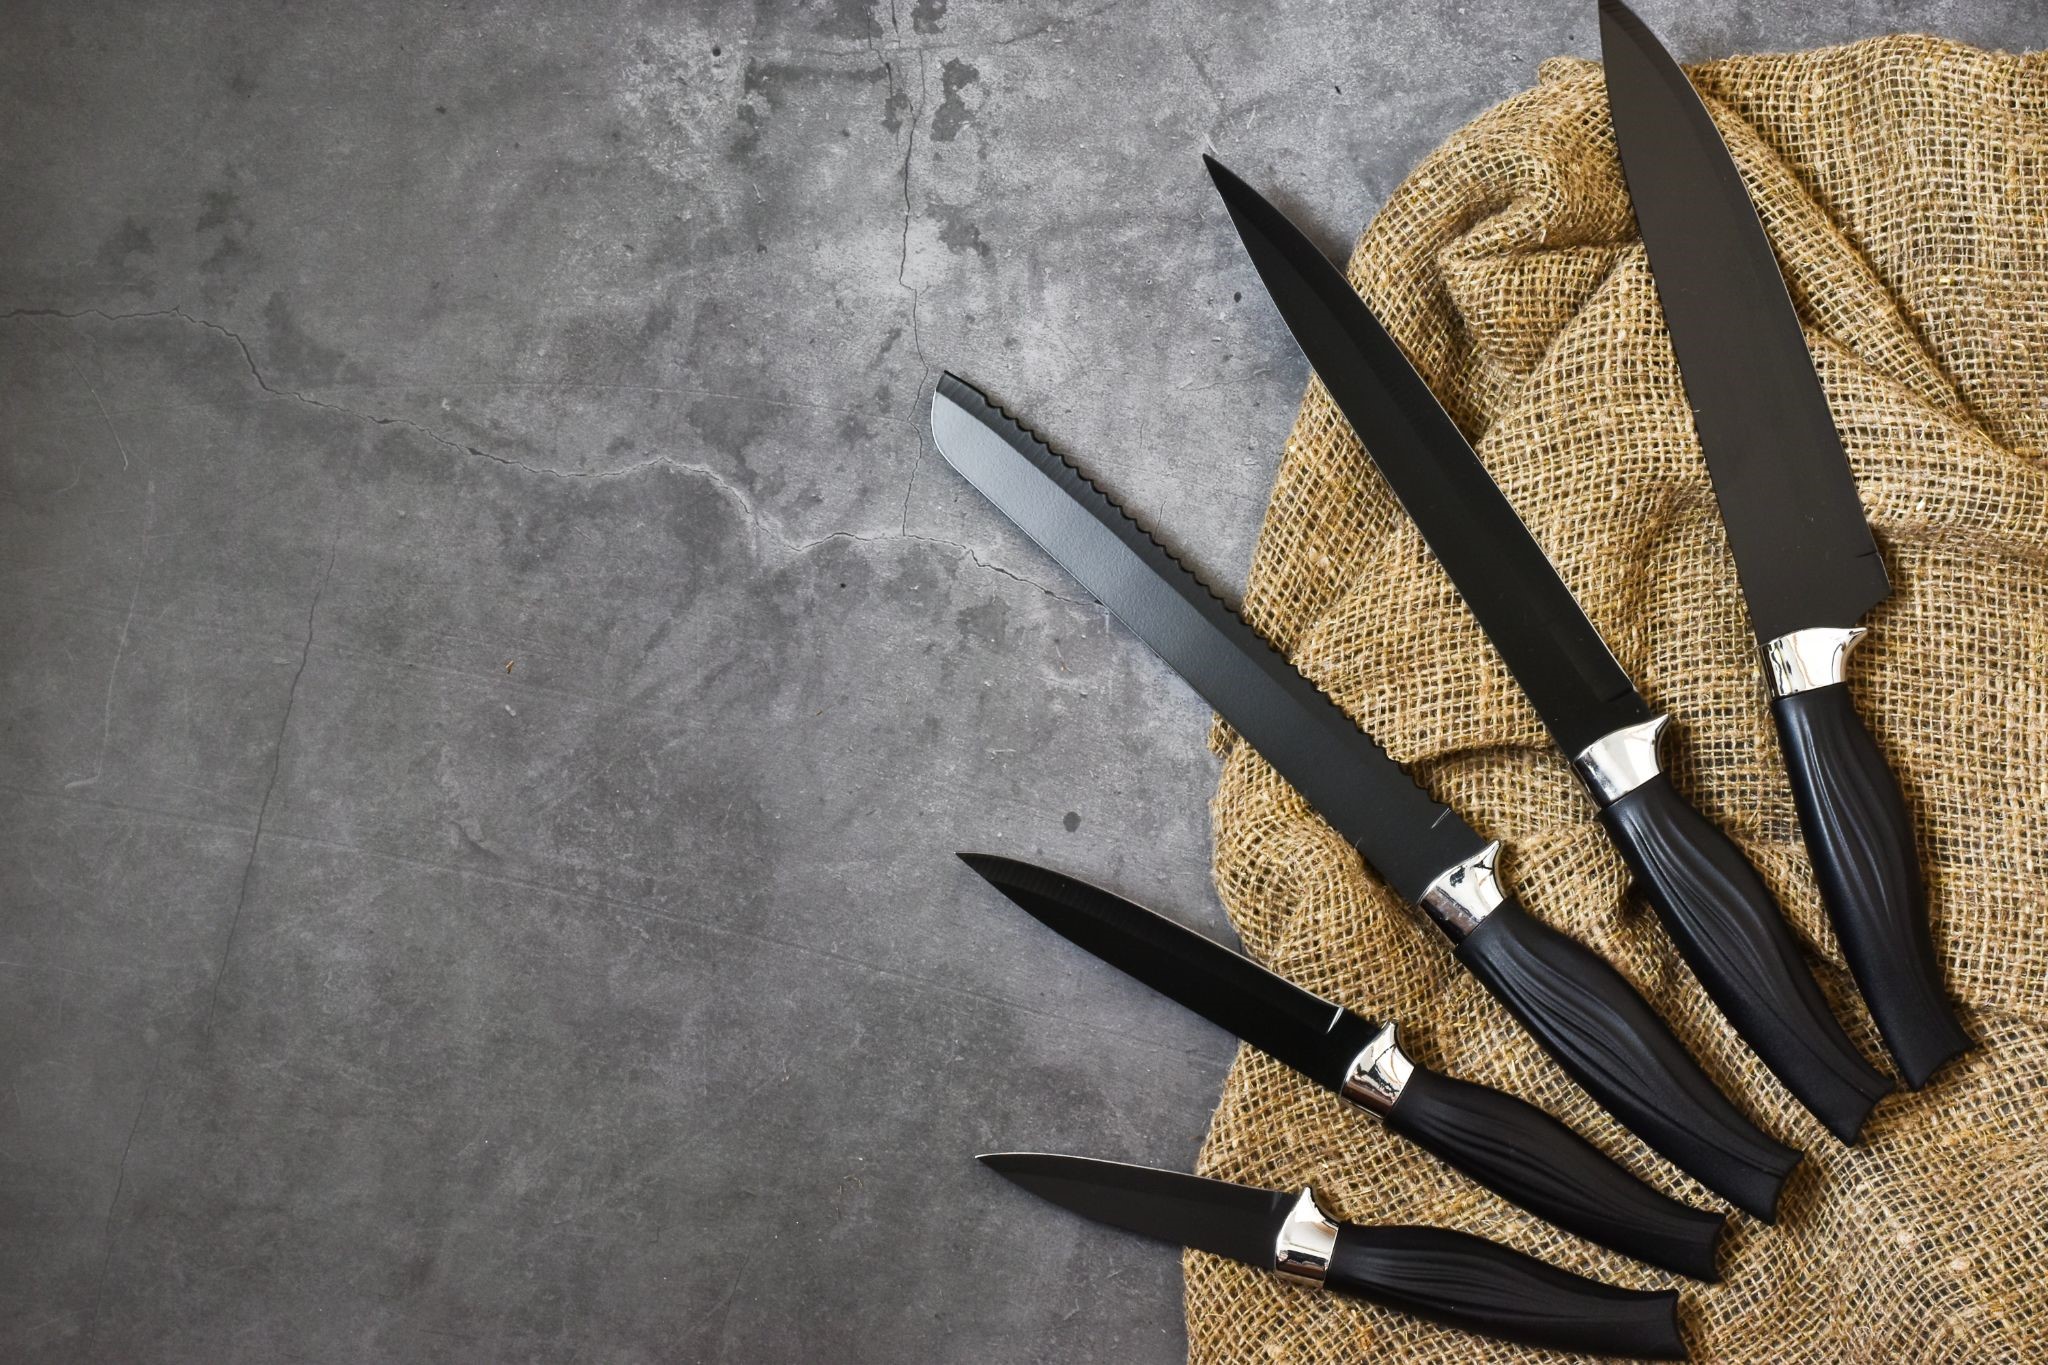 Кухонный нож: керамический или стальной - какой выбрать?